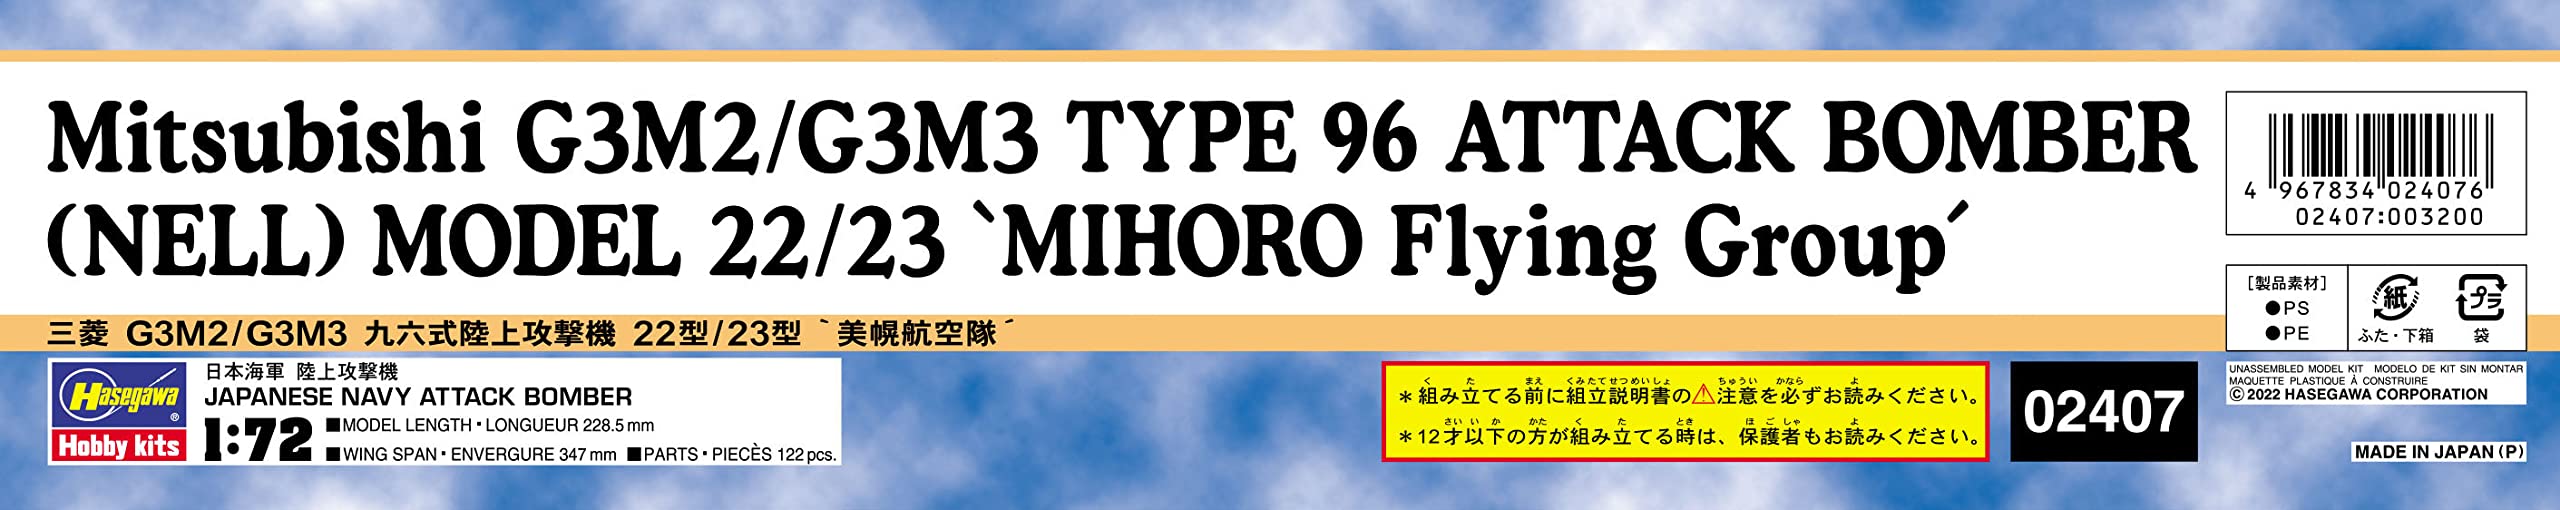 HASEGAWA 1/72 Mitsubishi G3M2/G3M3 Type 96 bombardier d'attaque modèle 22/23 'Bihoro Air Force' modèle en plastique